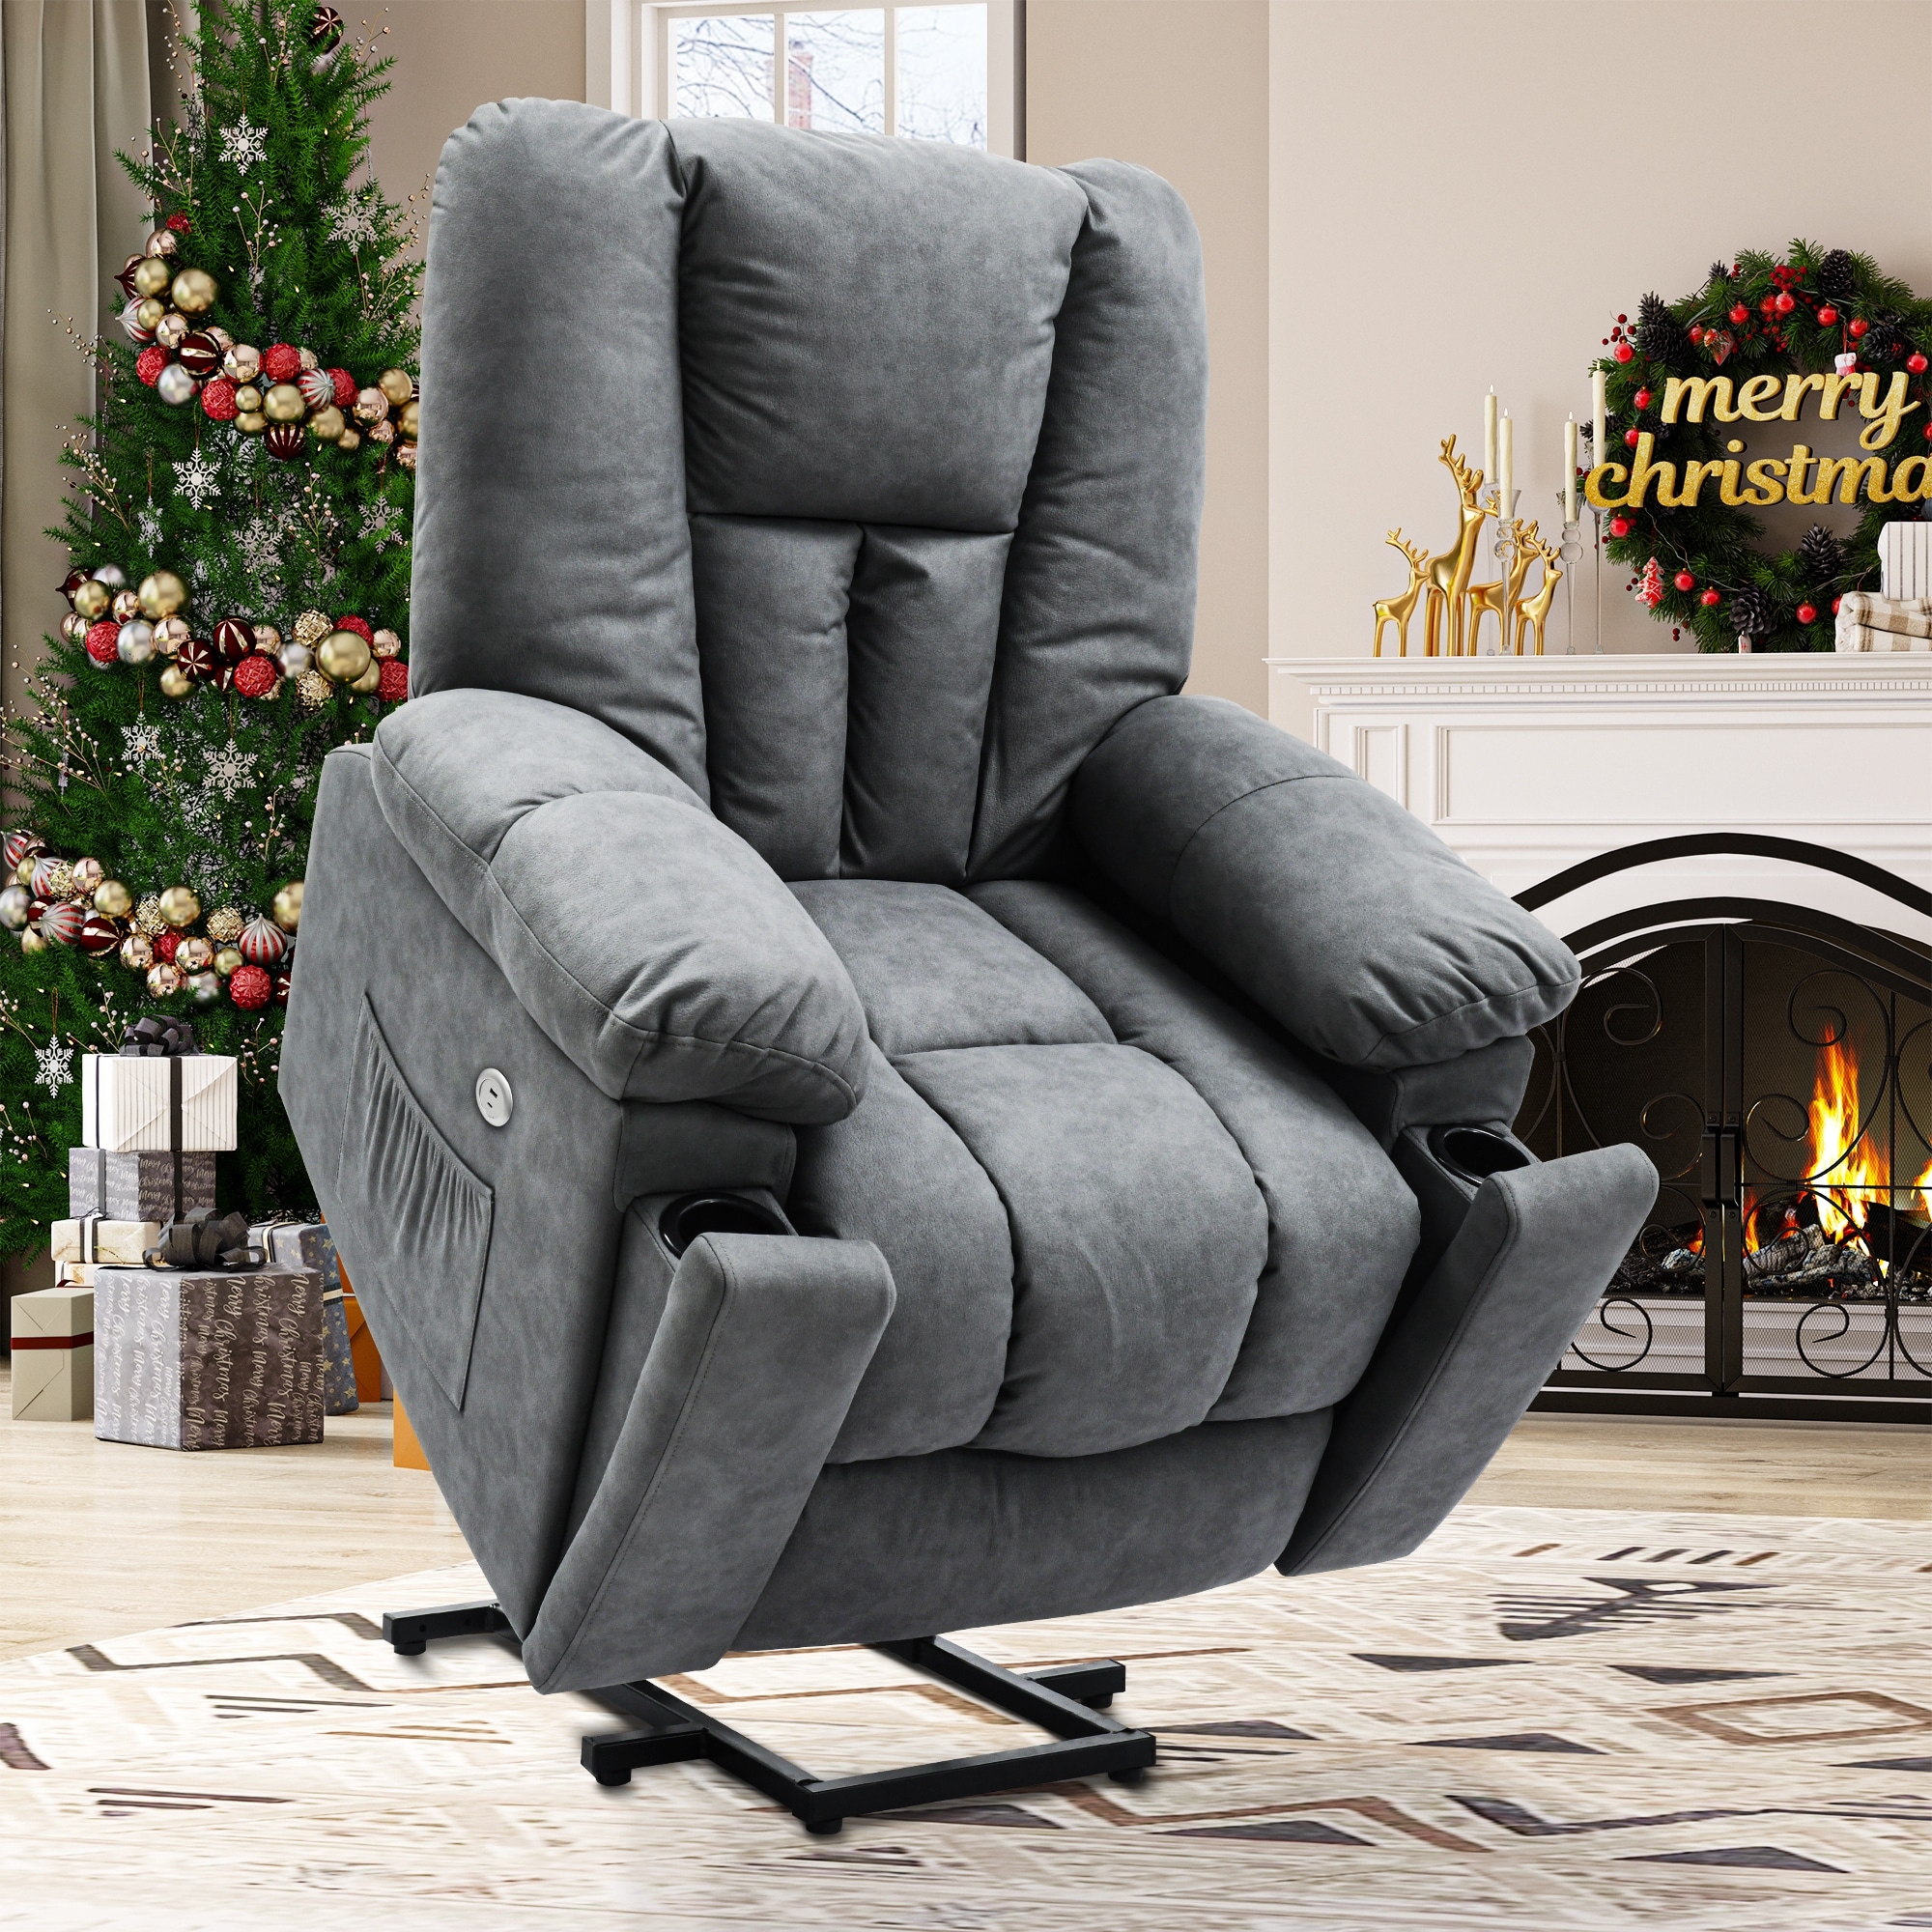 Moasis Grey Power Lift Recliner Sofa Massage Chair